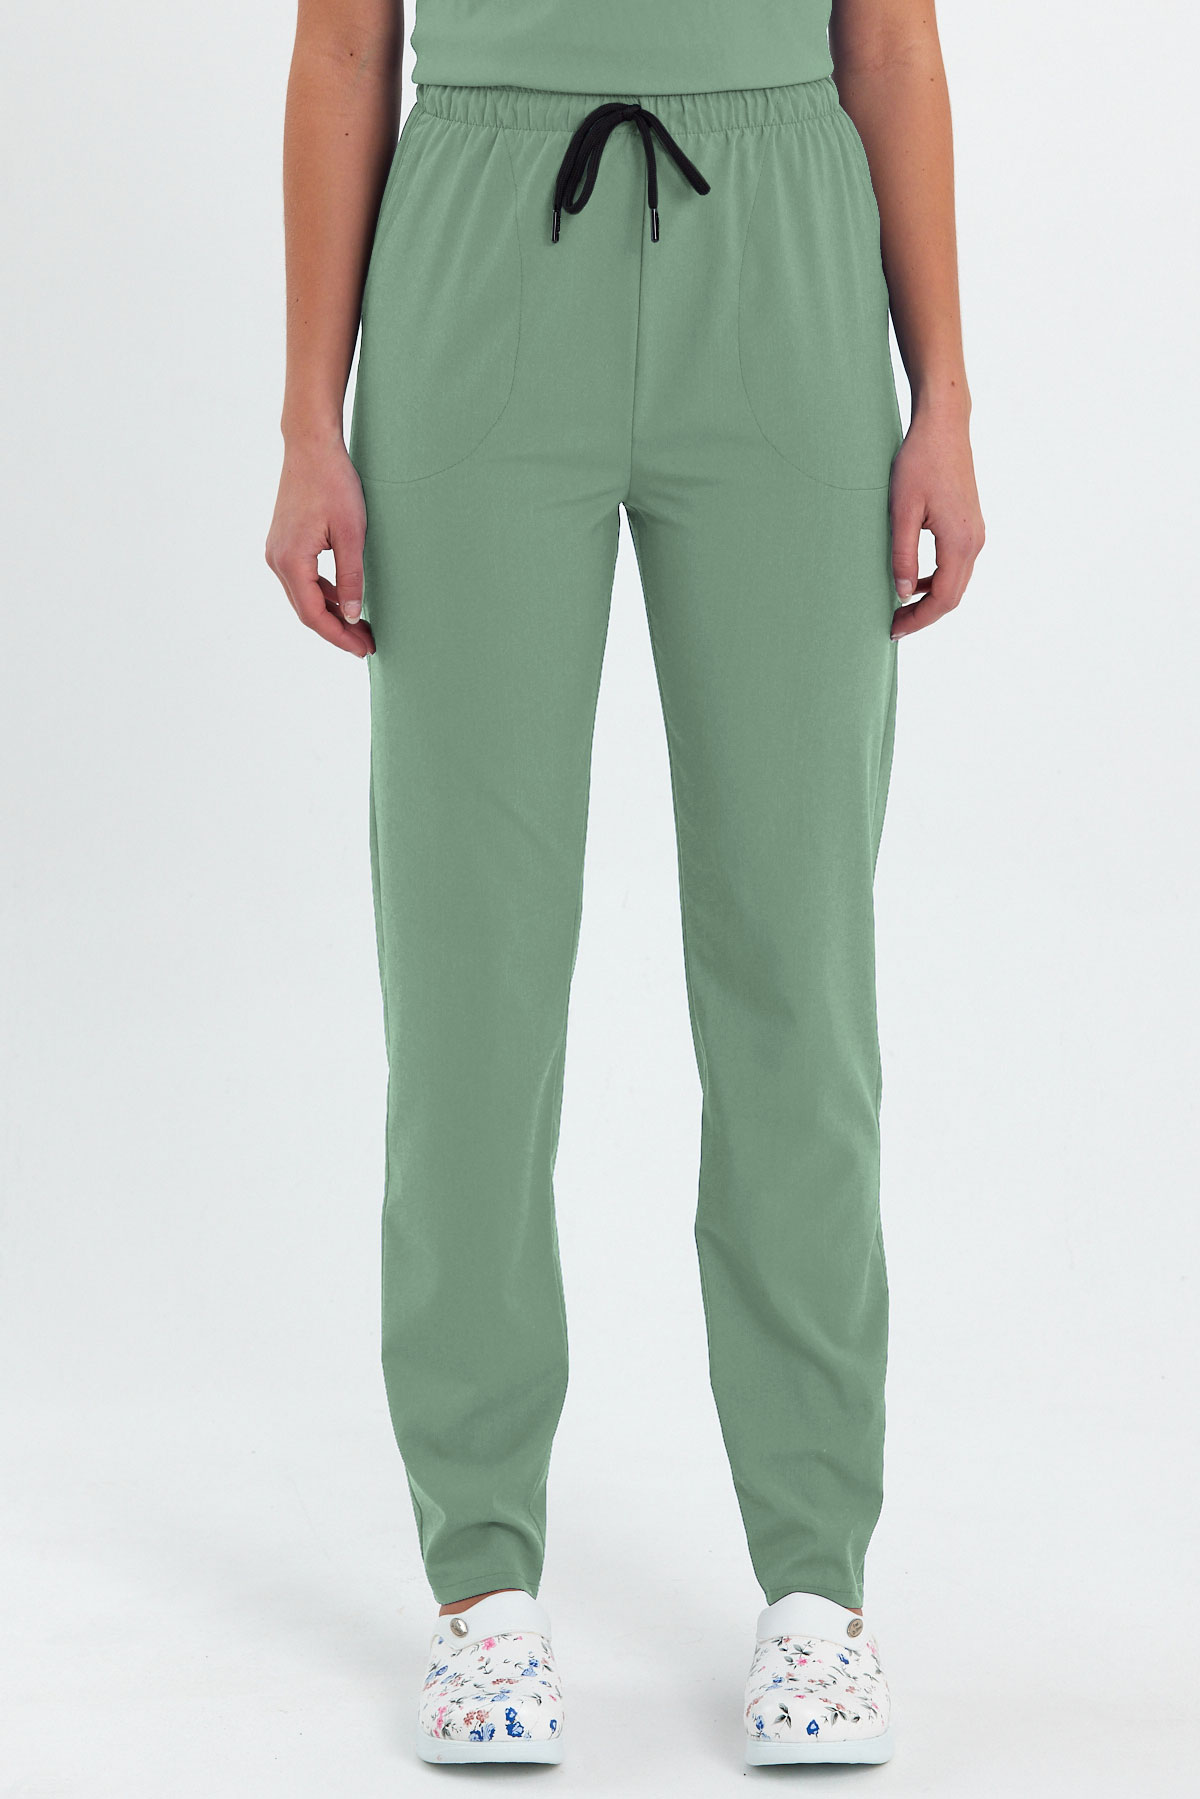 LAME 1009 Basic Likralı Mint Yeşili Scrubs, Hemşire Forması Klasik Paça Pantolon